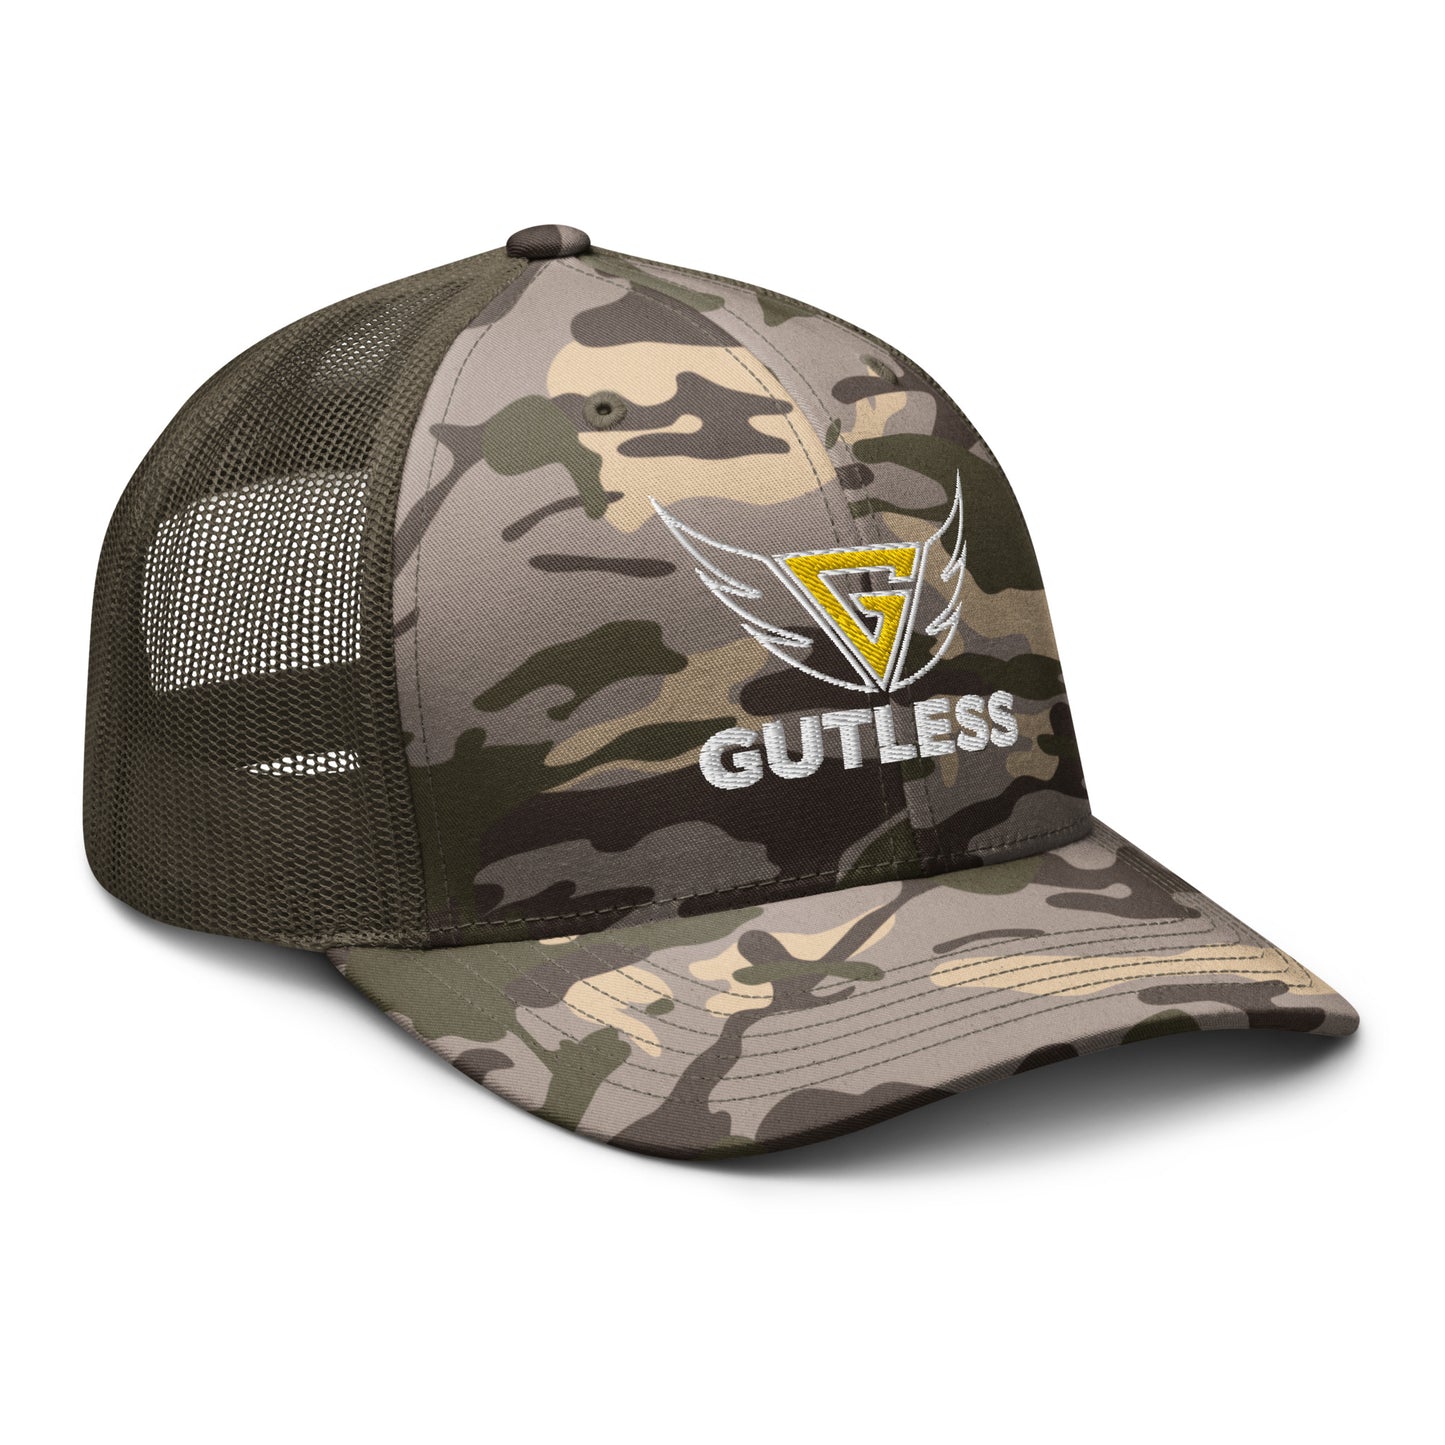 GUTLESS CAMO-G GANGSTER HAT